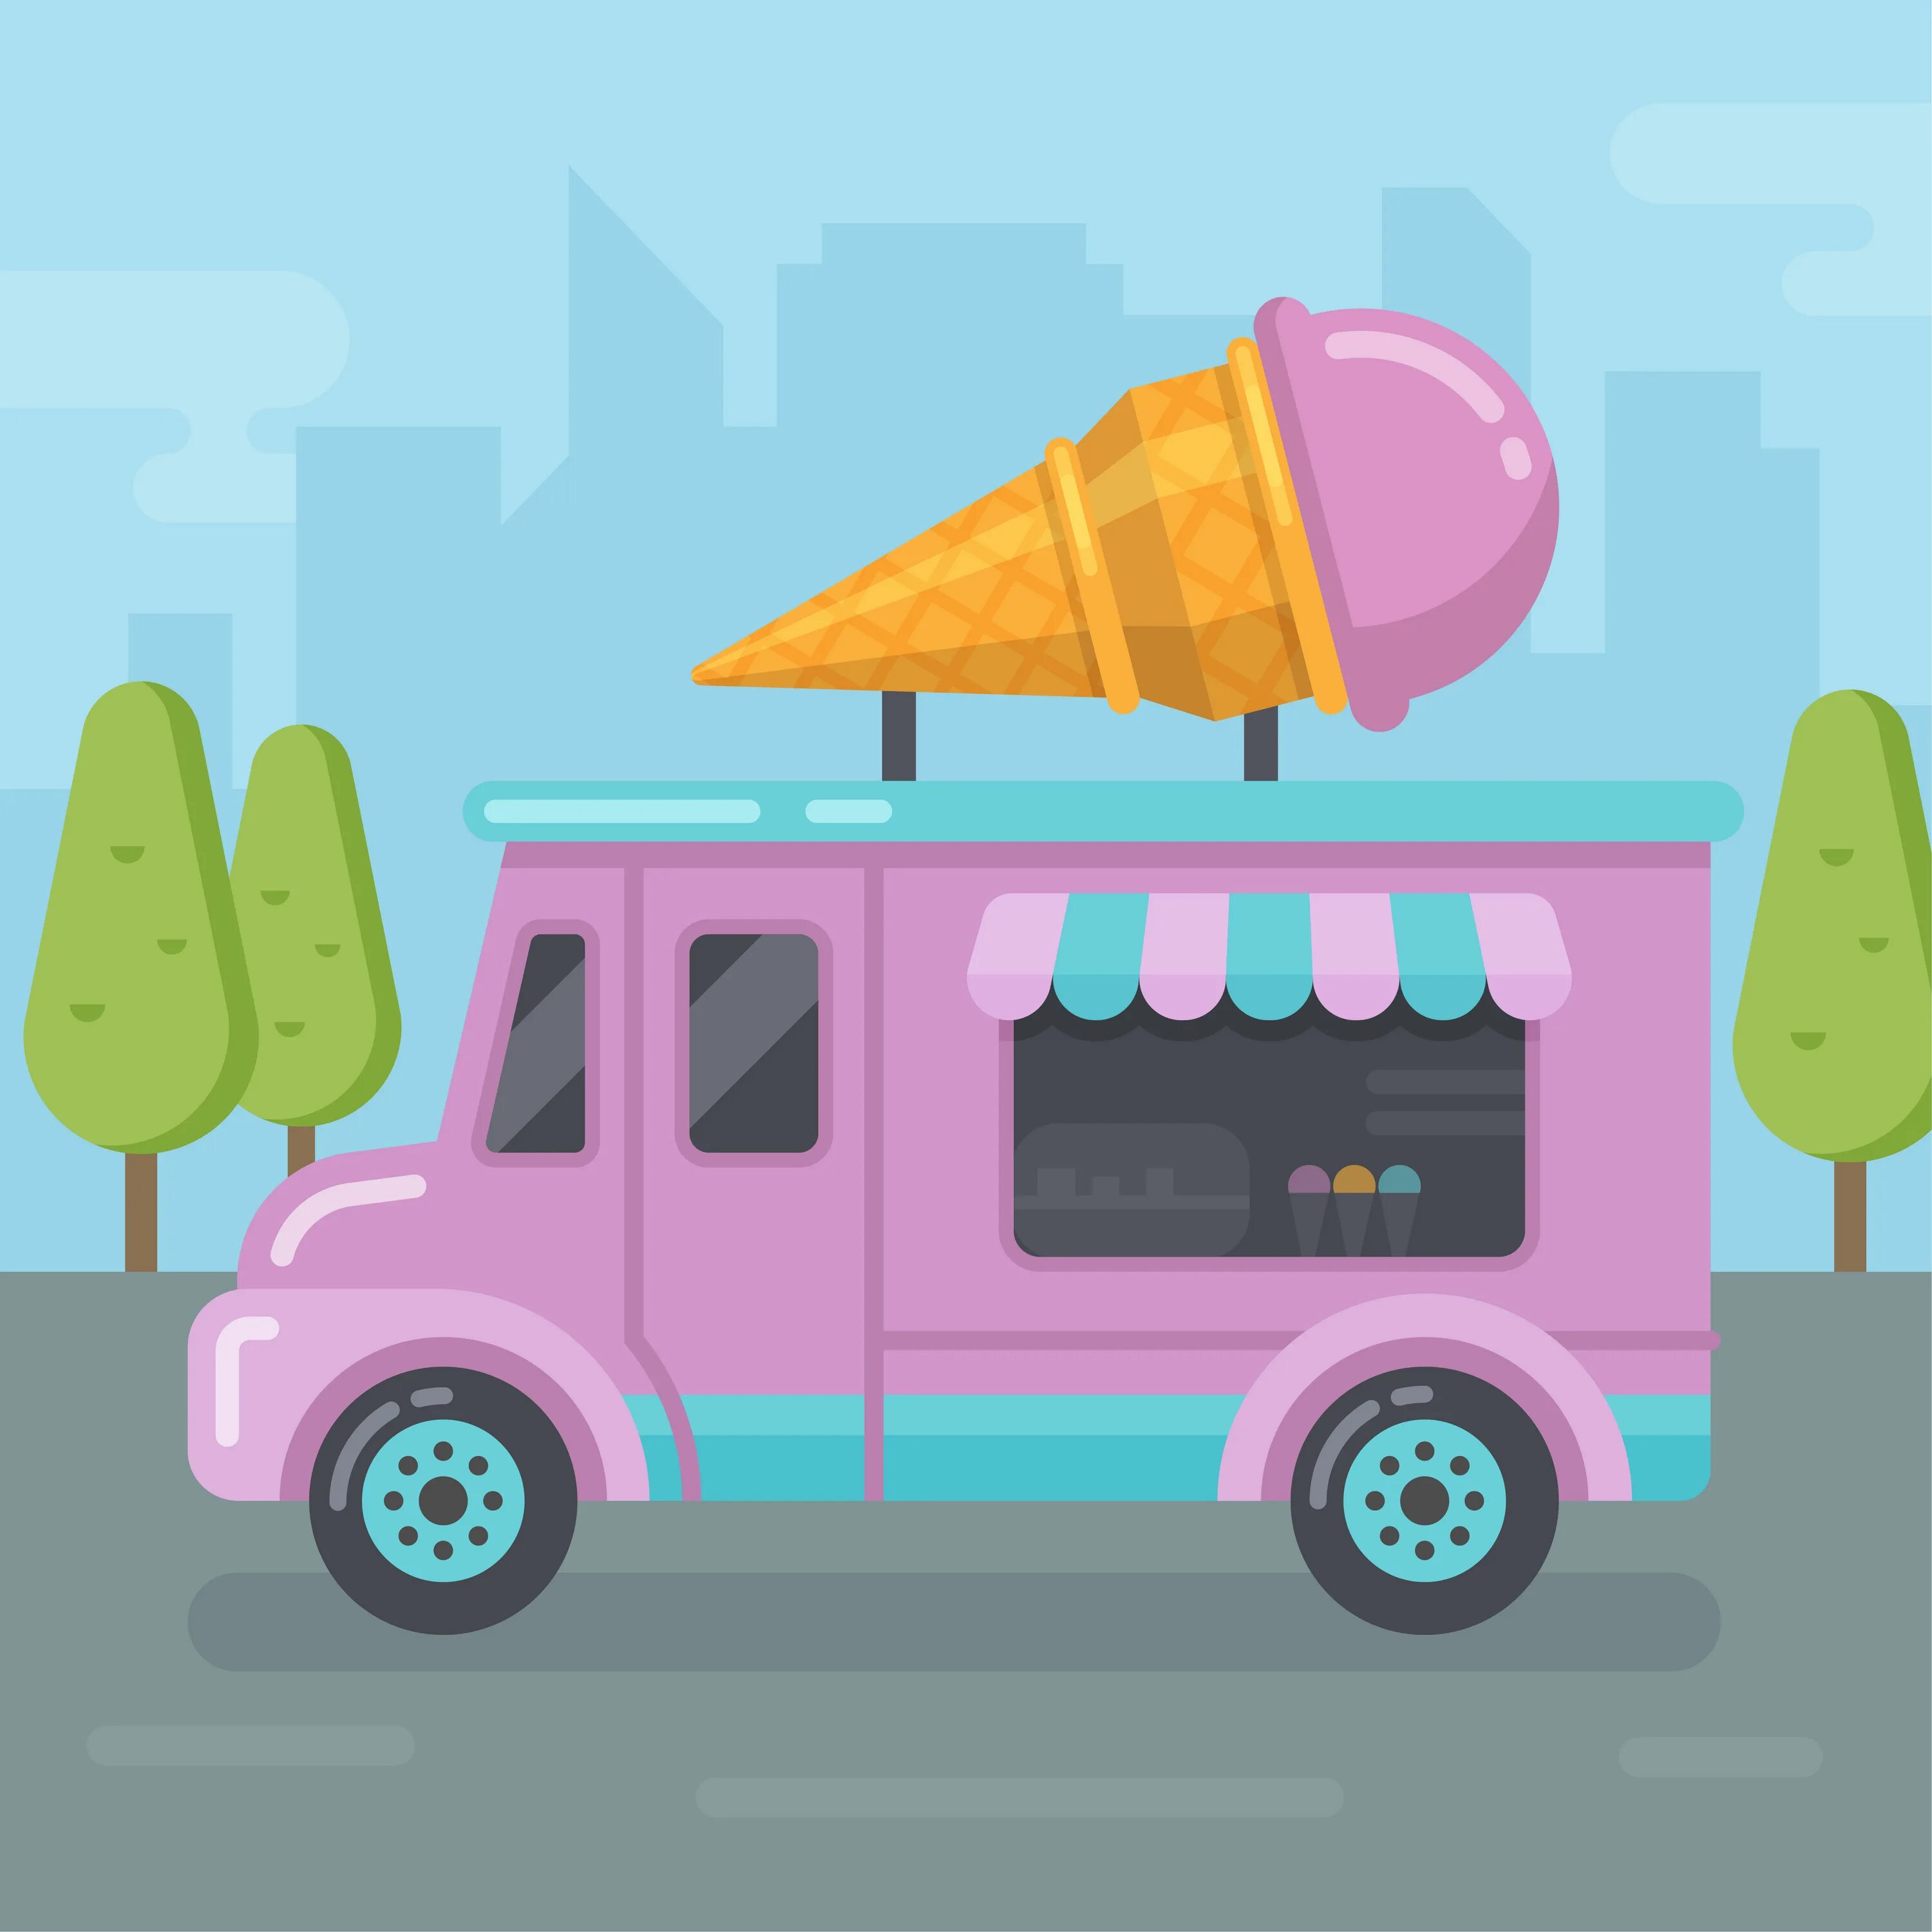 Включи прохожу мороженщика. Фургон мороженщика из игры Ice Cream. Фургон с мороженым гача лайф. Розовый фургон с мороженым. Грузовик мороженщика.